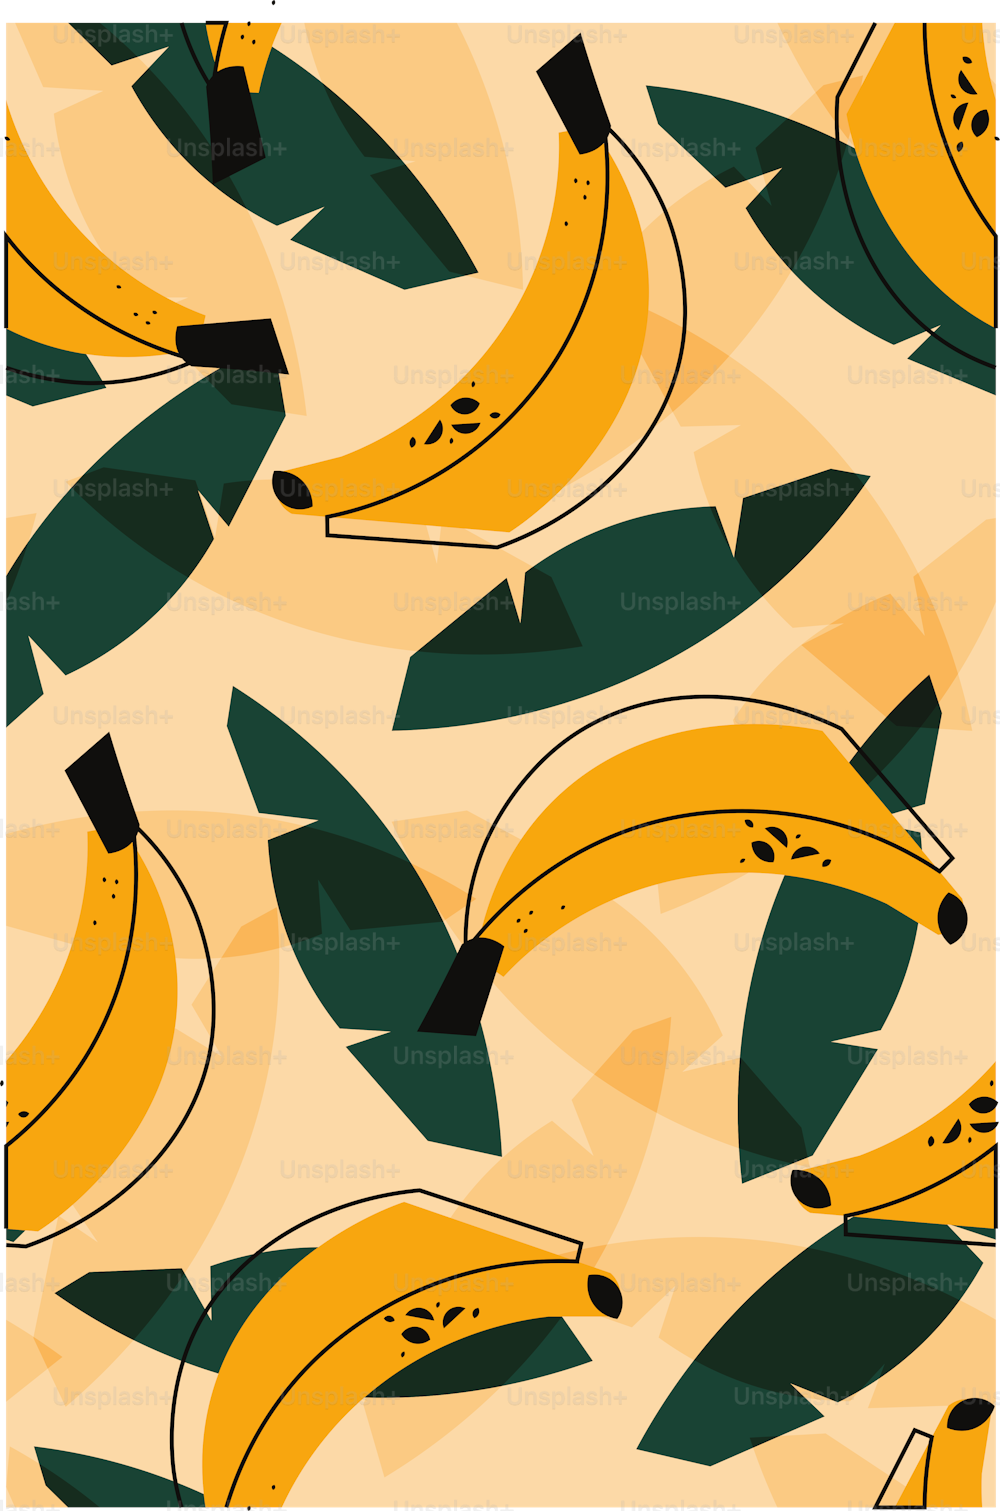 Bananas pattern. Vector illustration.